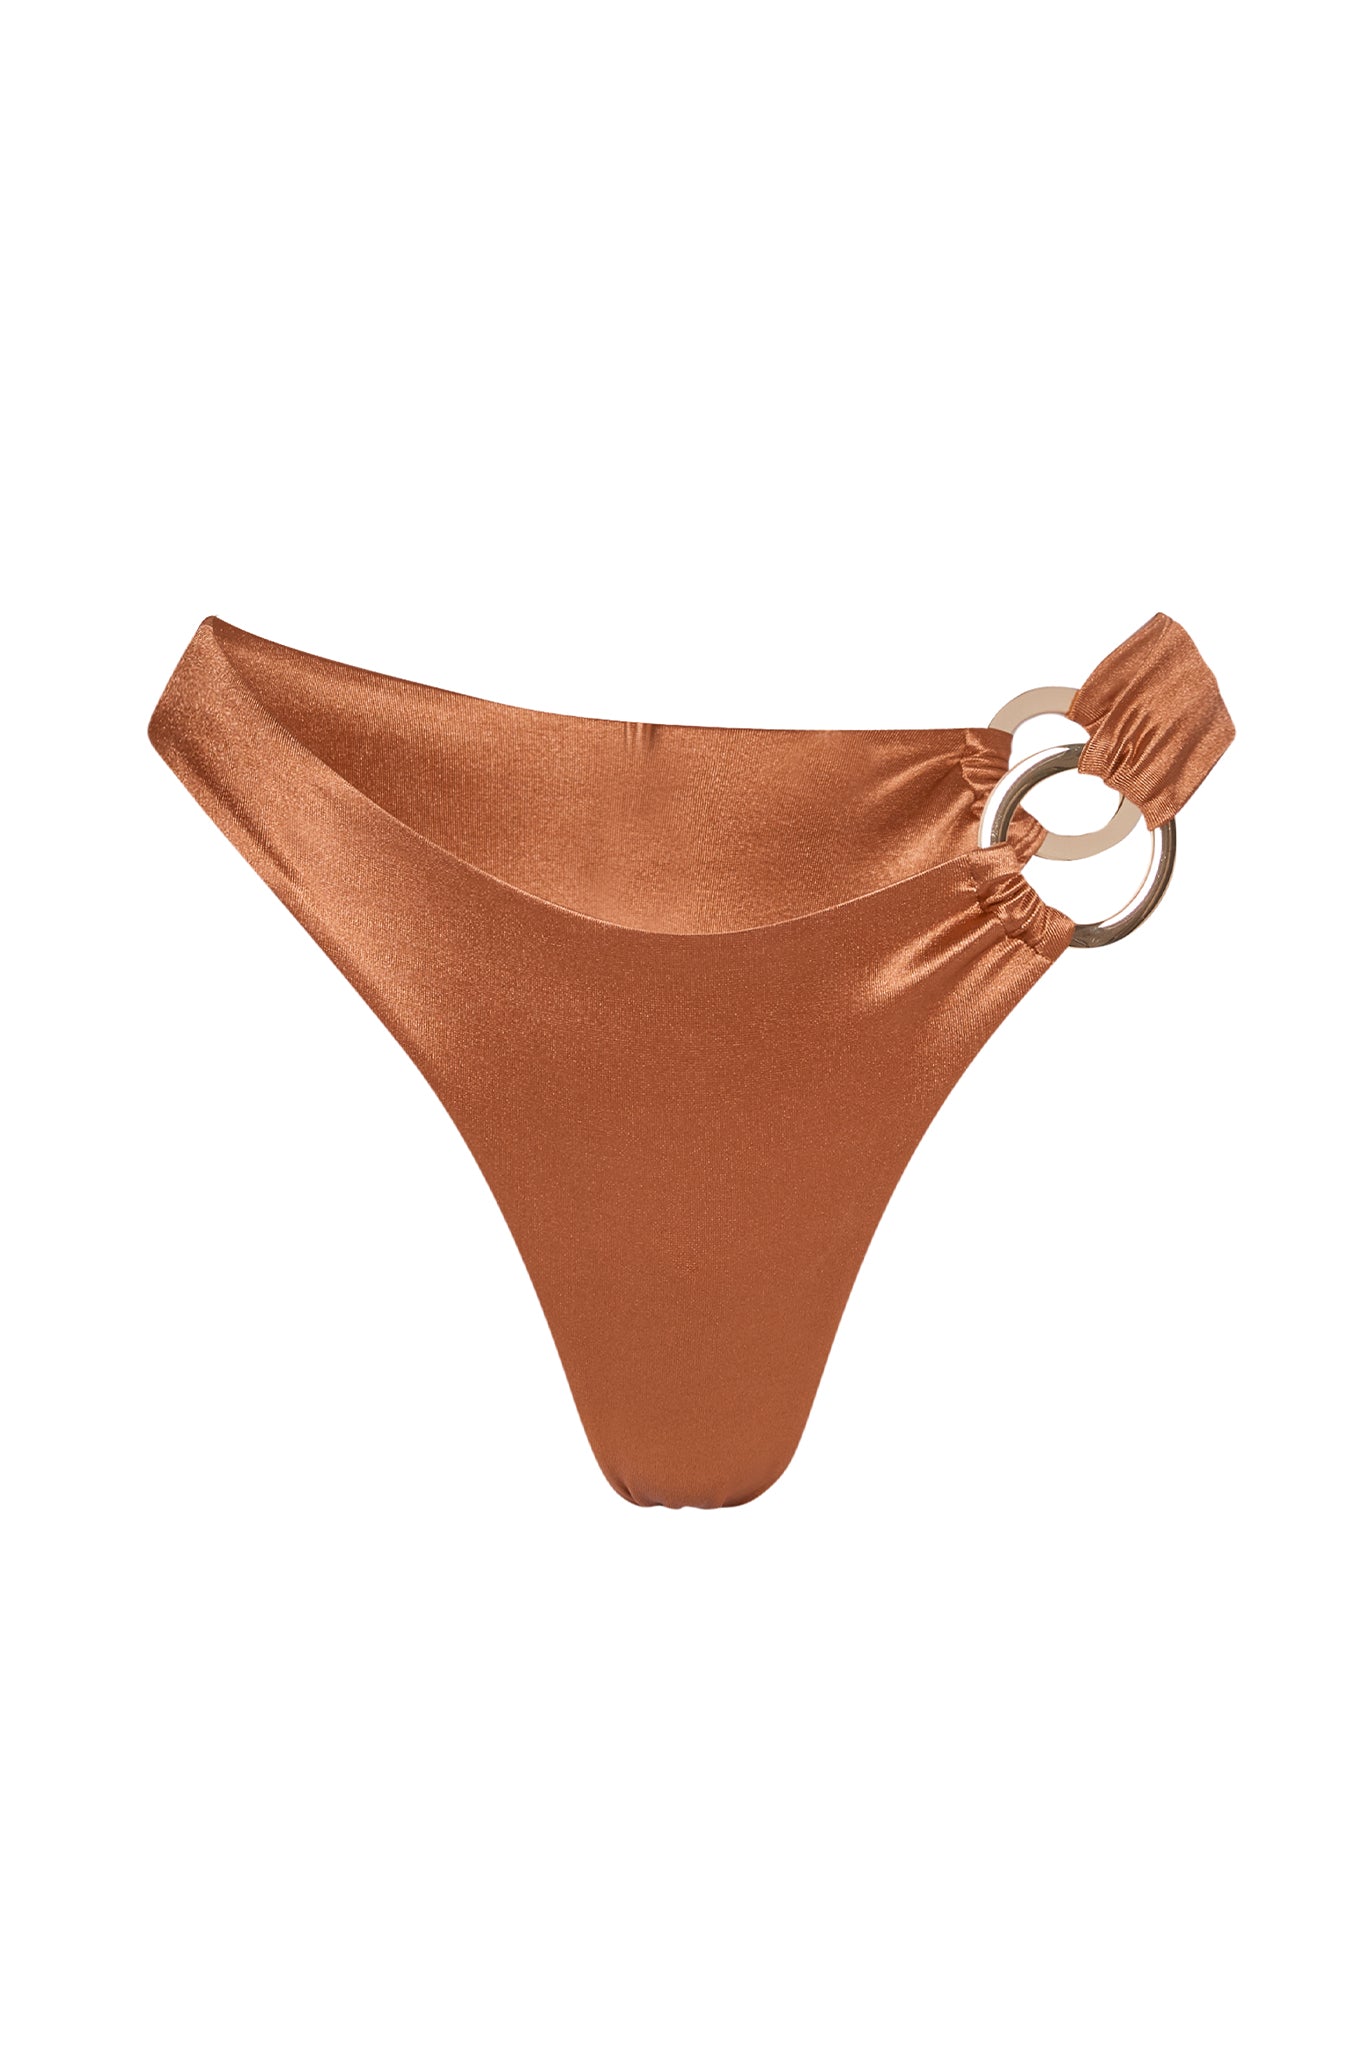 Clovelly Top - Bronze Shiny Jersey – Monday Swimwear